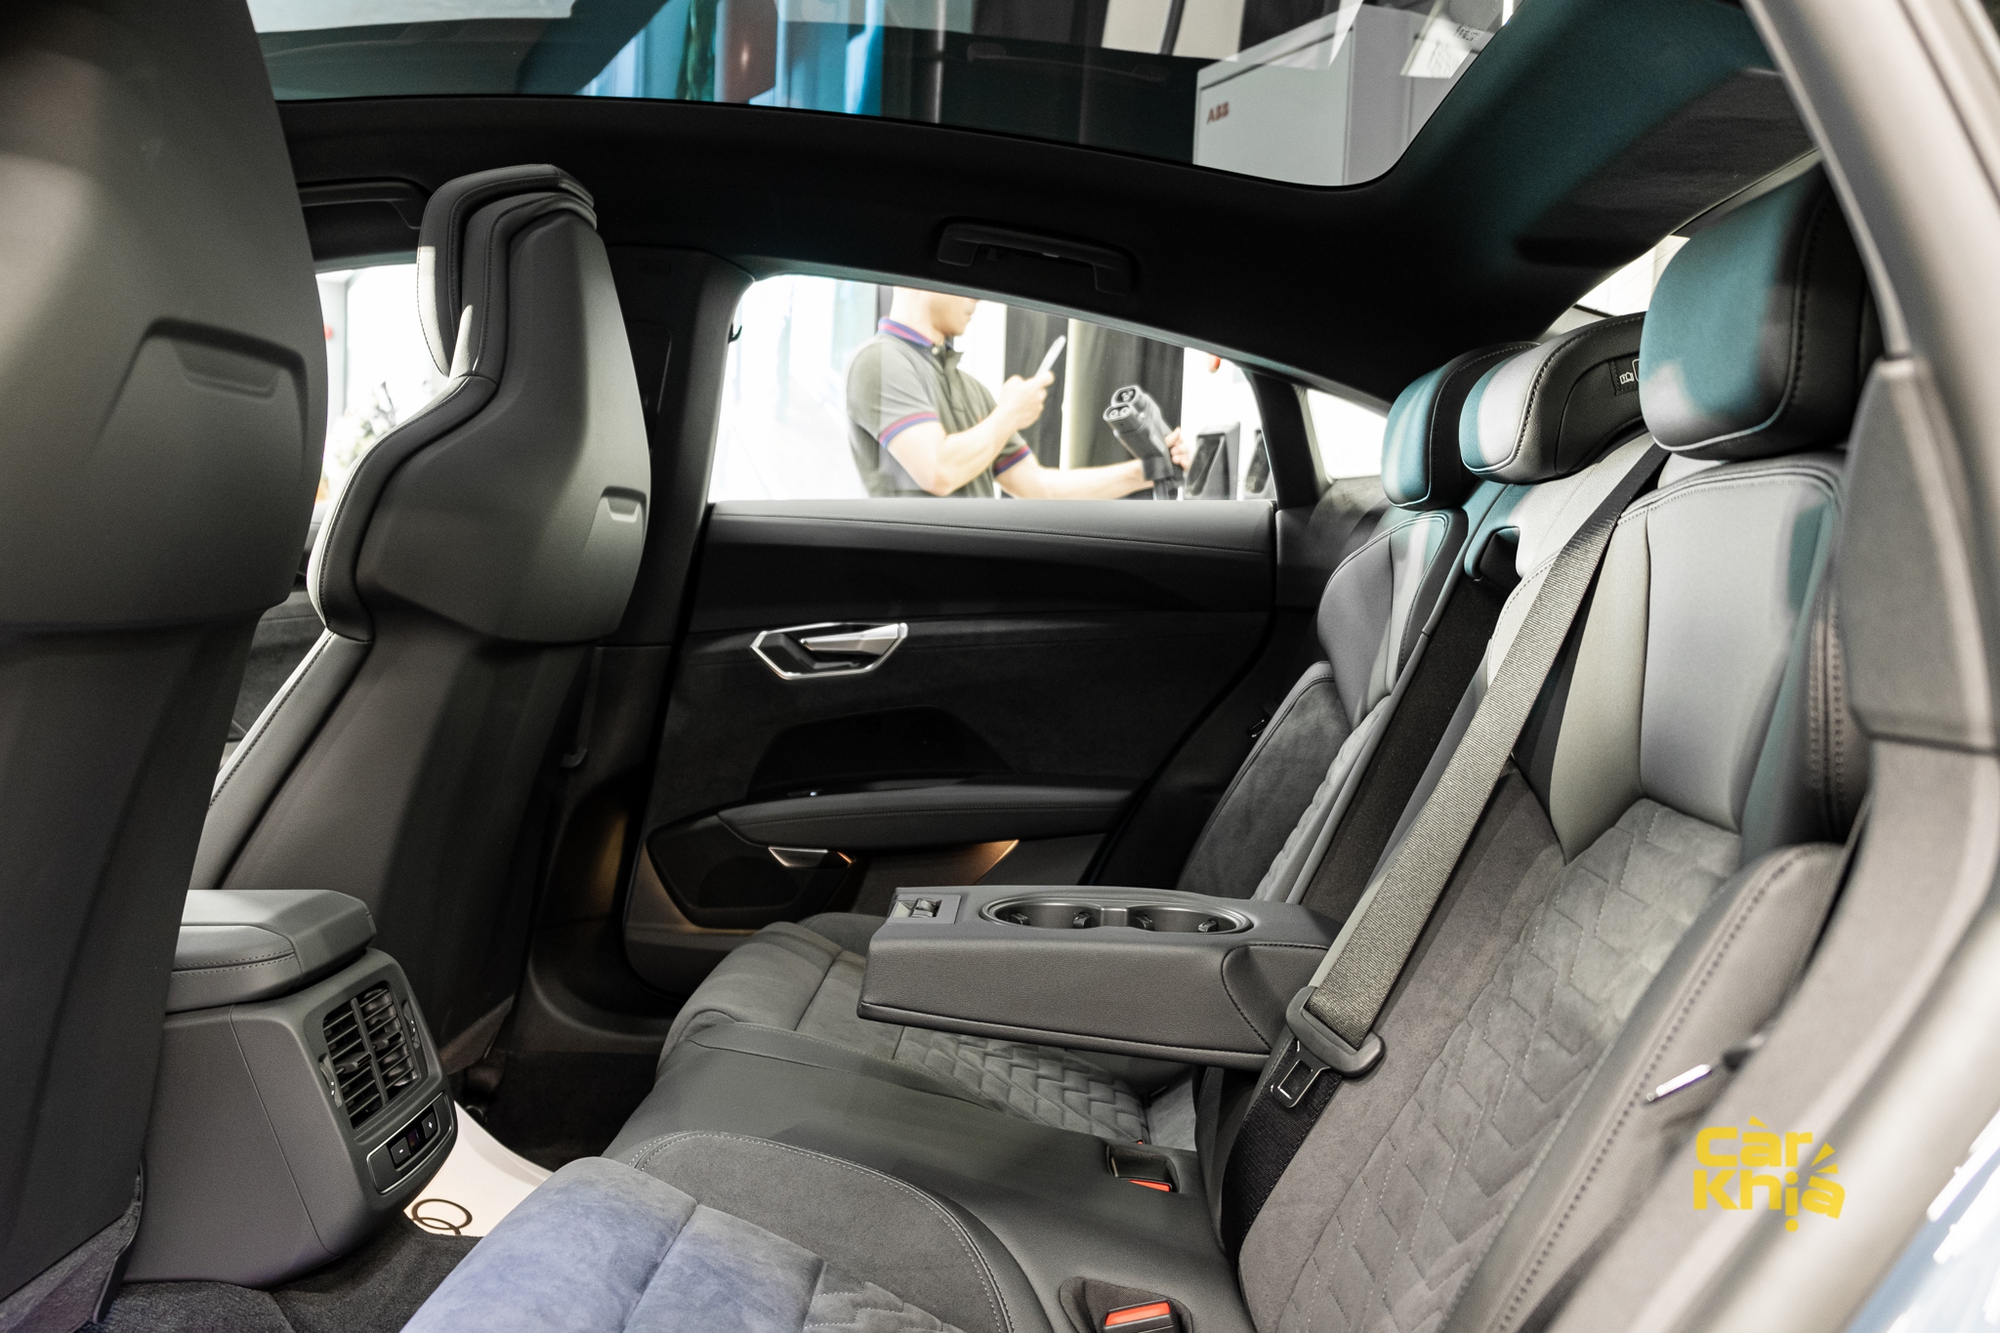 Audi RS e-tron GT giá 5,9 tỷ đồng tại Việt Nam: Sạc 5 phút đi 100km, đặt hàng 6 tháng mới có xe - Ảnh 5.